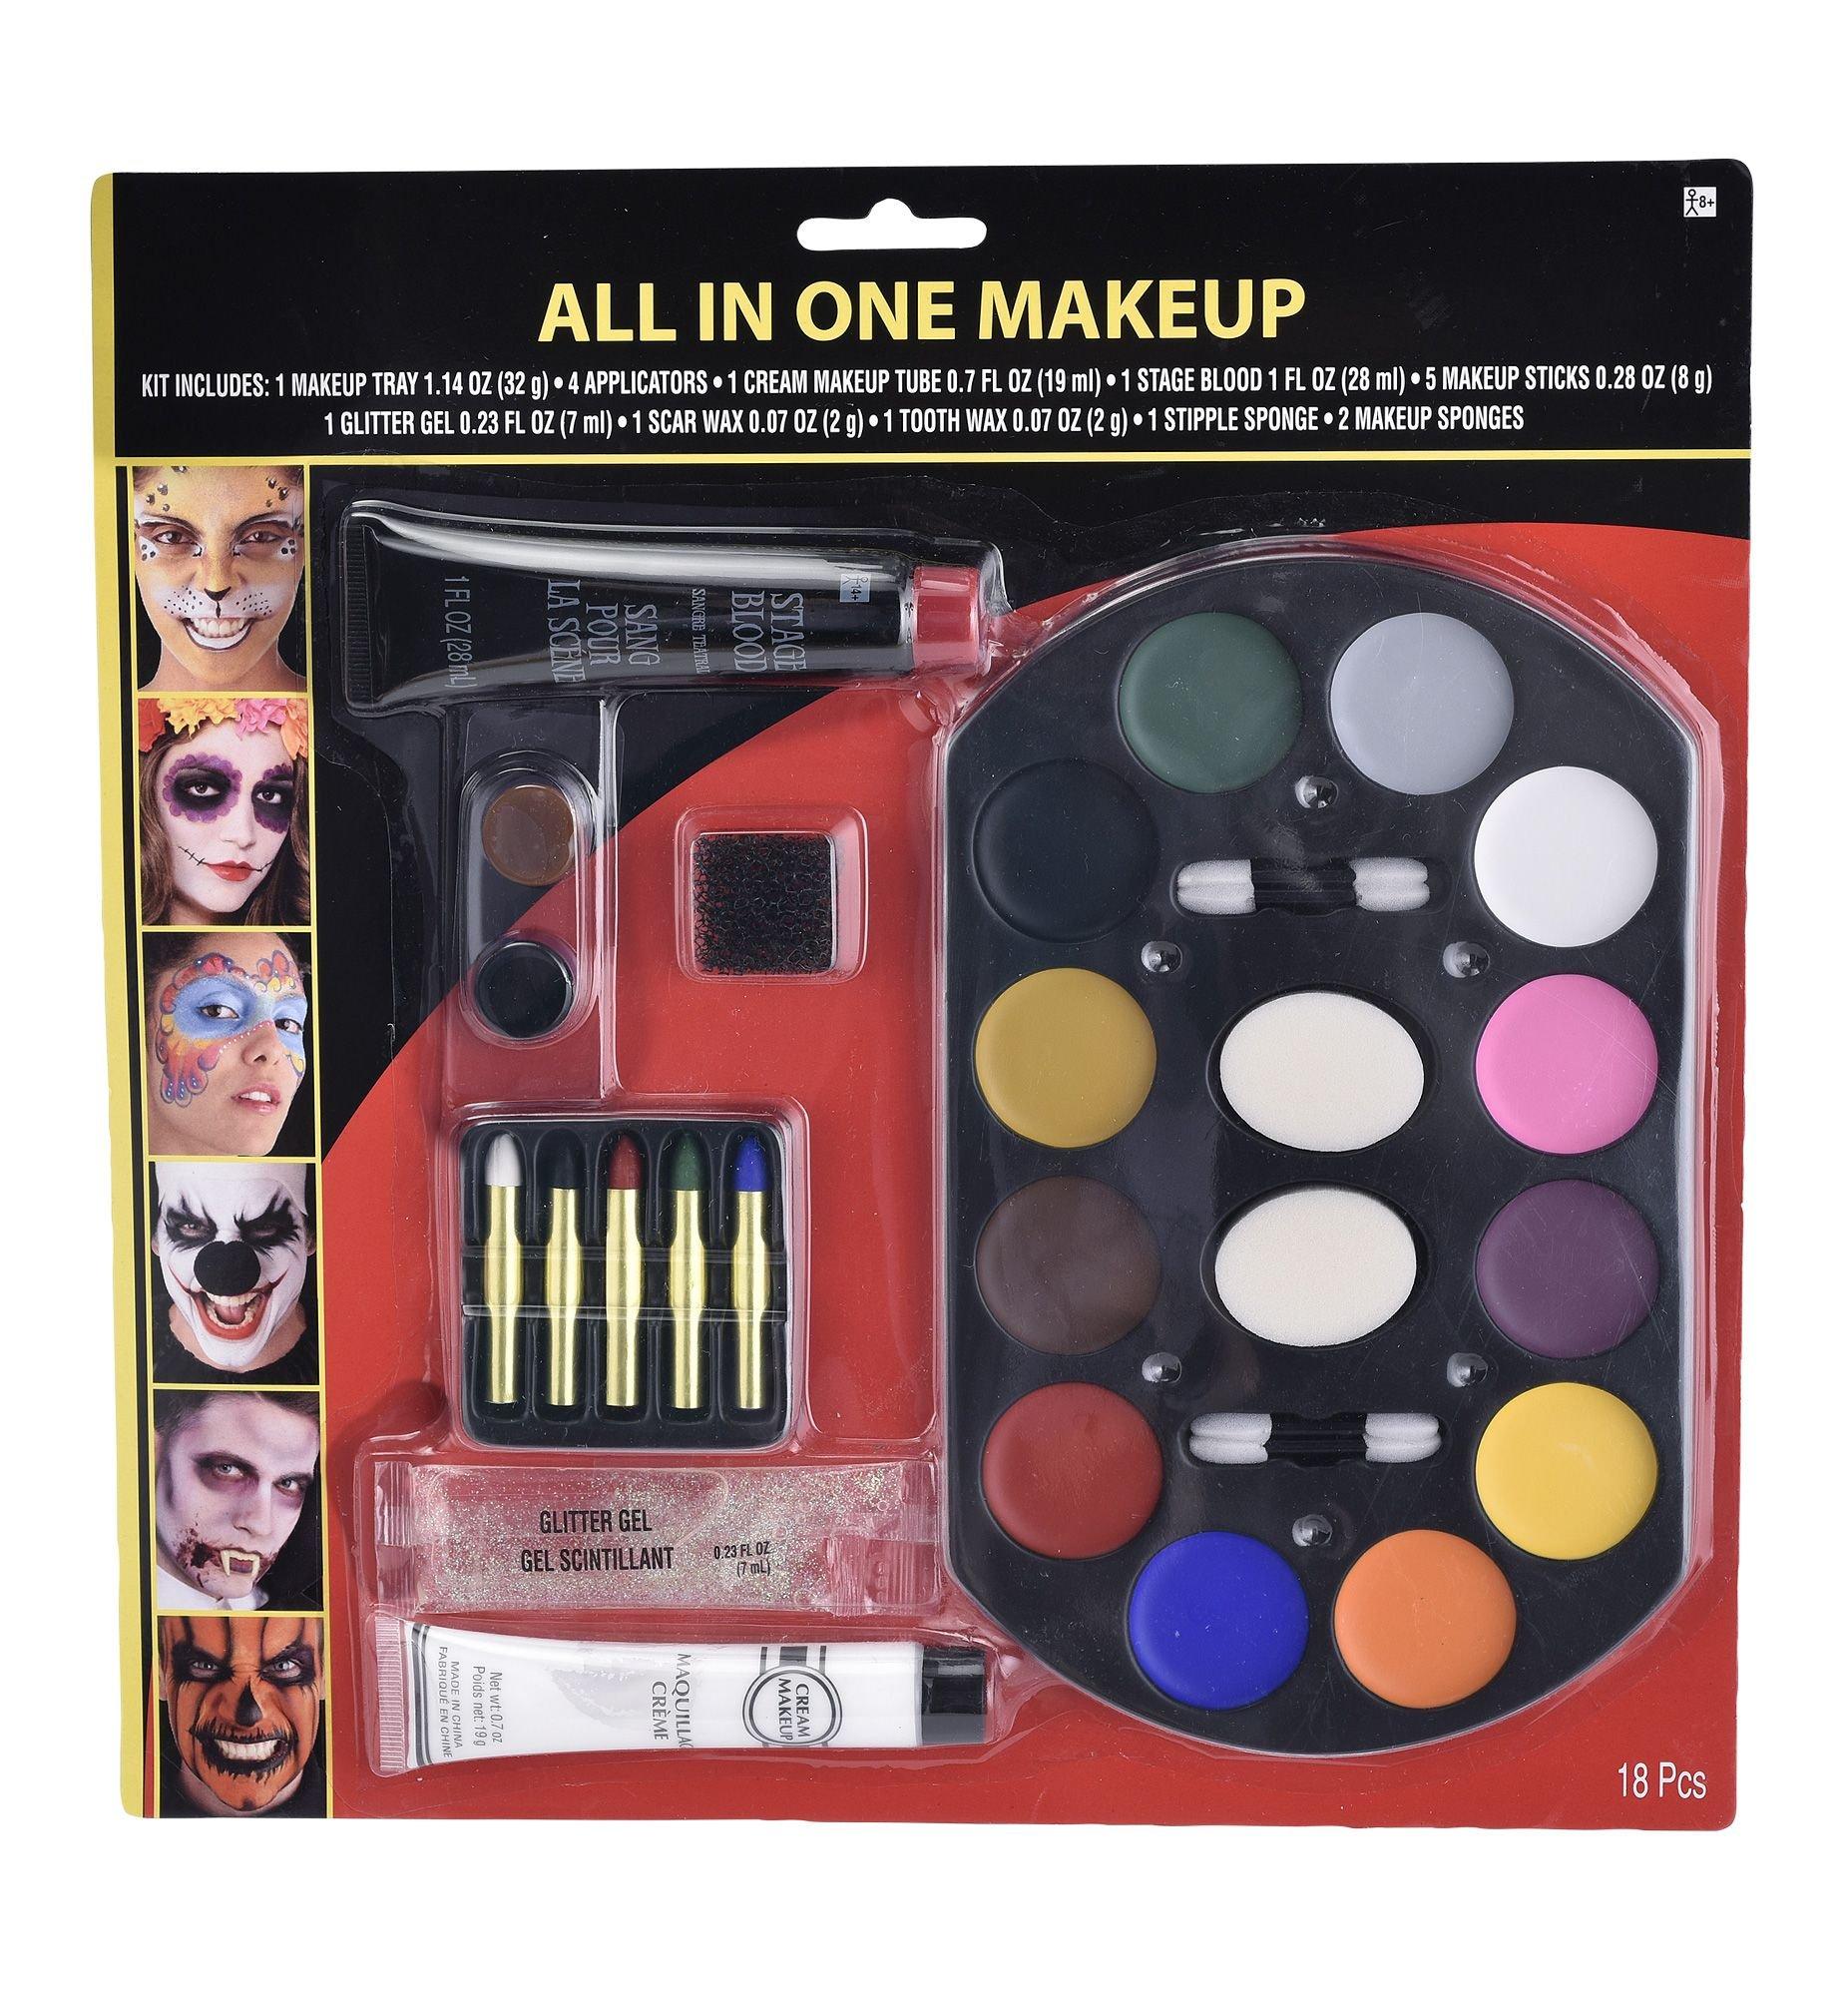 Horror Face Paint Makeup Kit - Halloween Makeup, Fake Blood